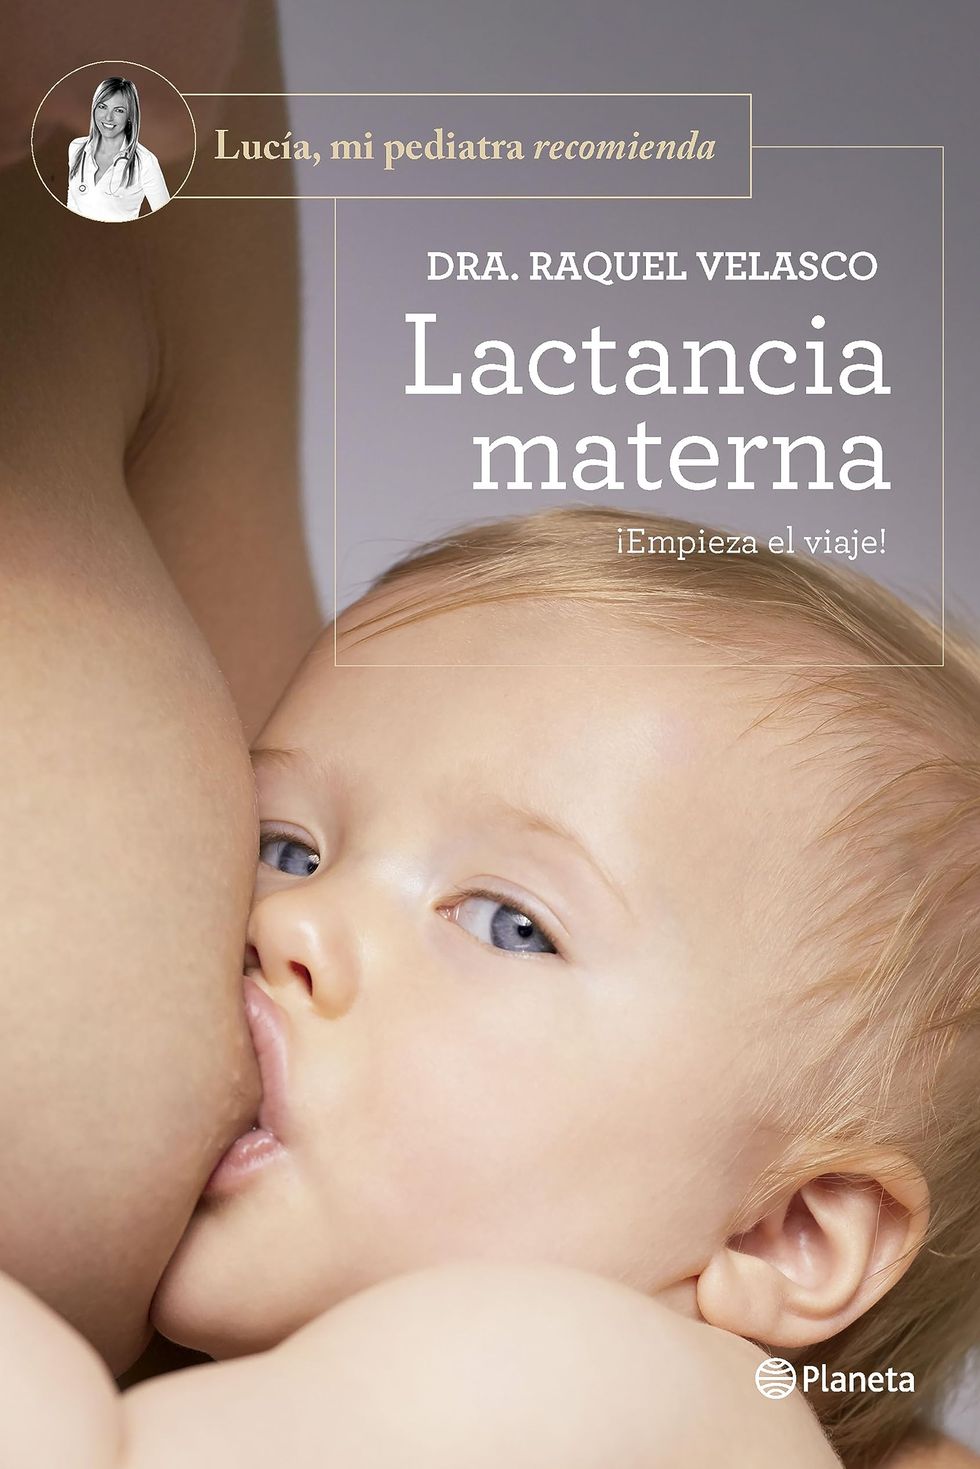 Lactancia materna: ¡Empieza el viaje! (Lucía, mi pediatra recomienda)